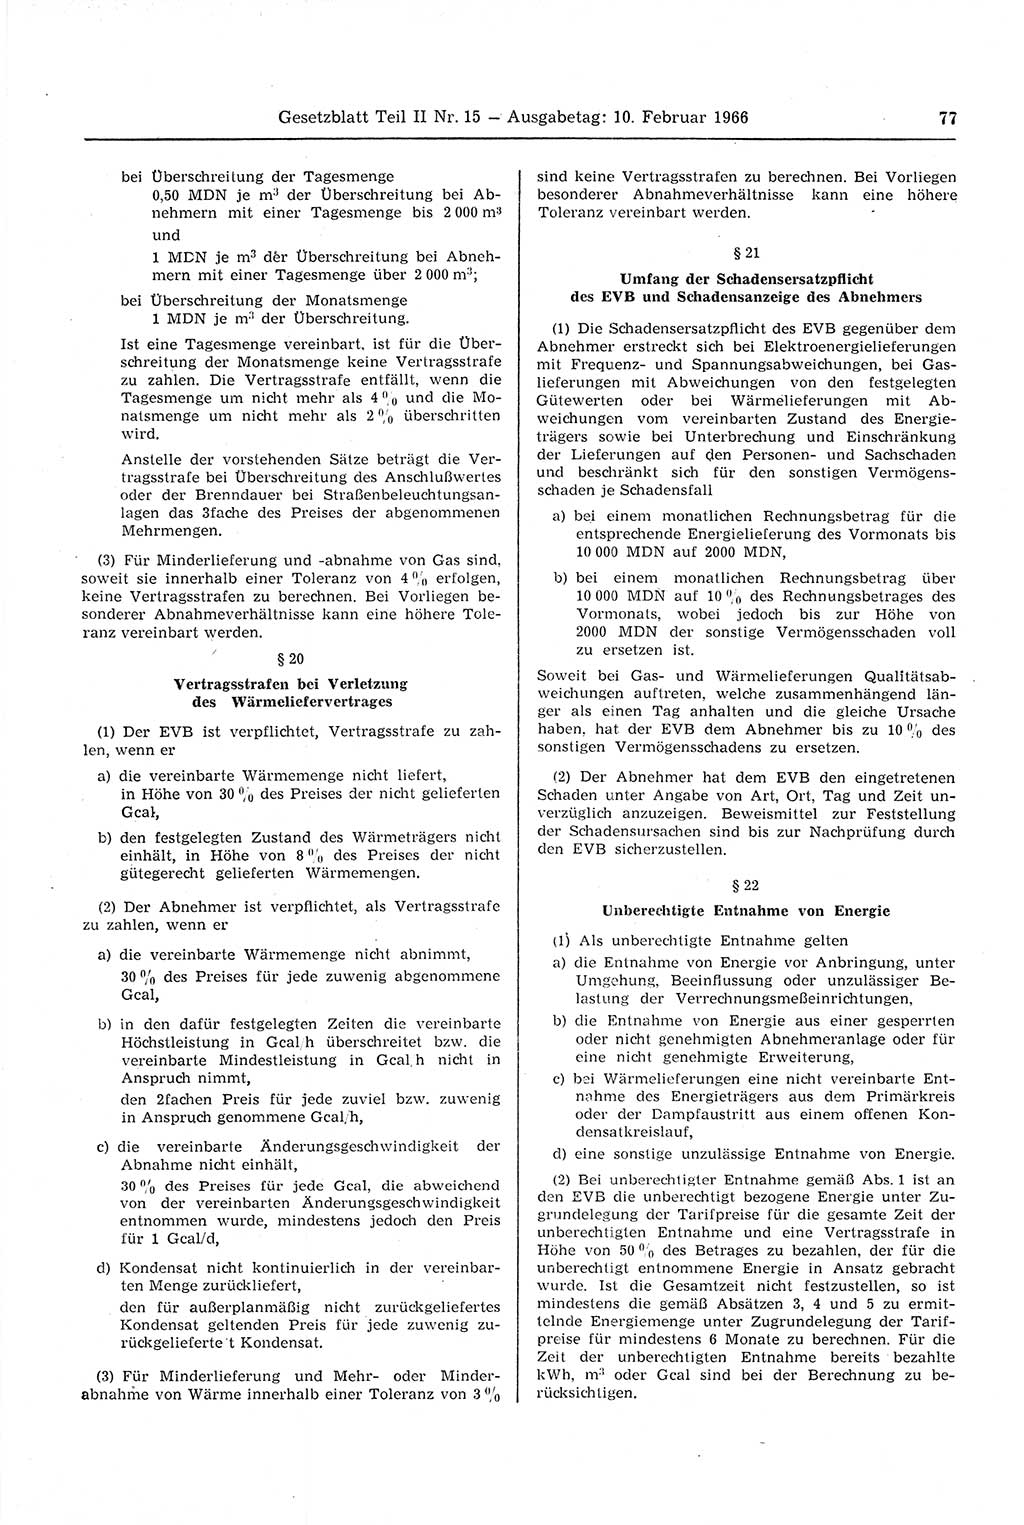 Gesetzblatt (GBl.) der Deutschen Demokratischen Republik (DDR) Teil ⅠⅠ 1966, Seite 77 (GBl. DDR ⅠⅠ 1966, S. 77)